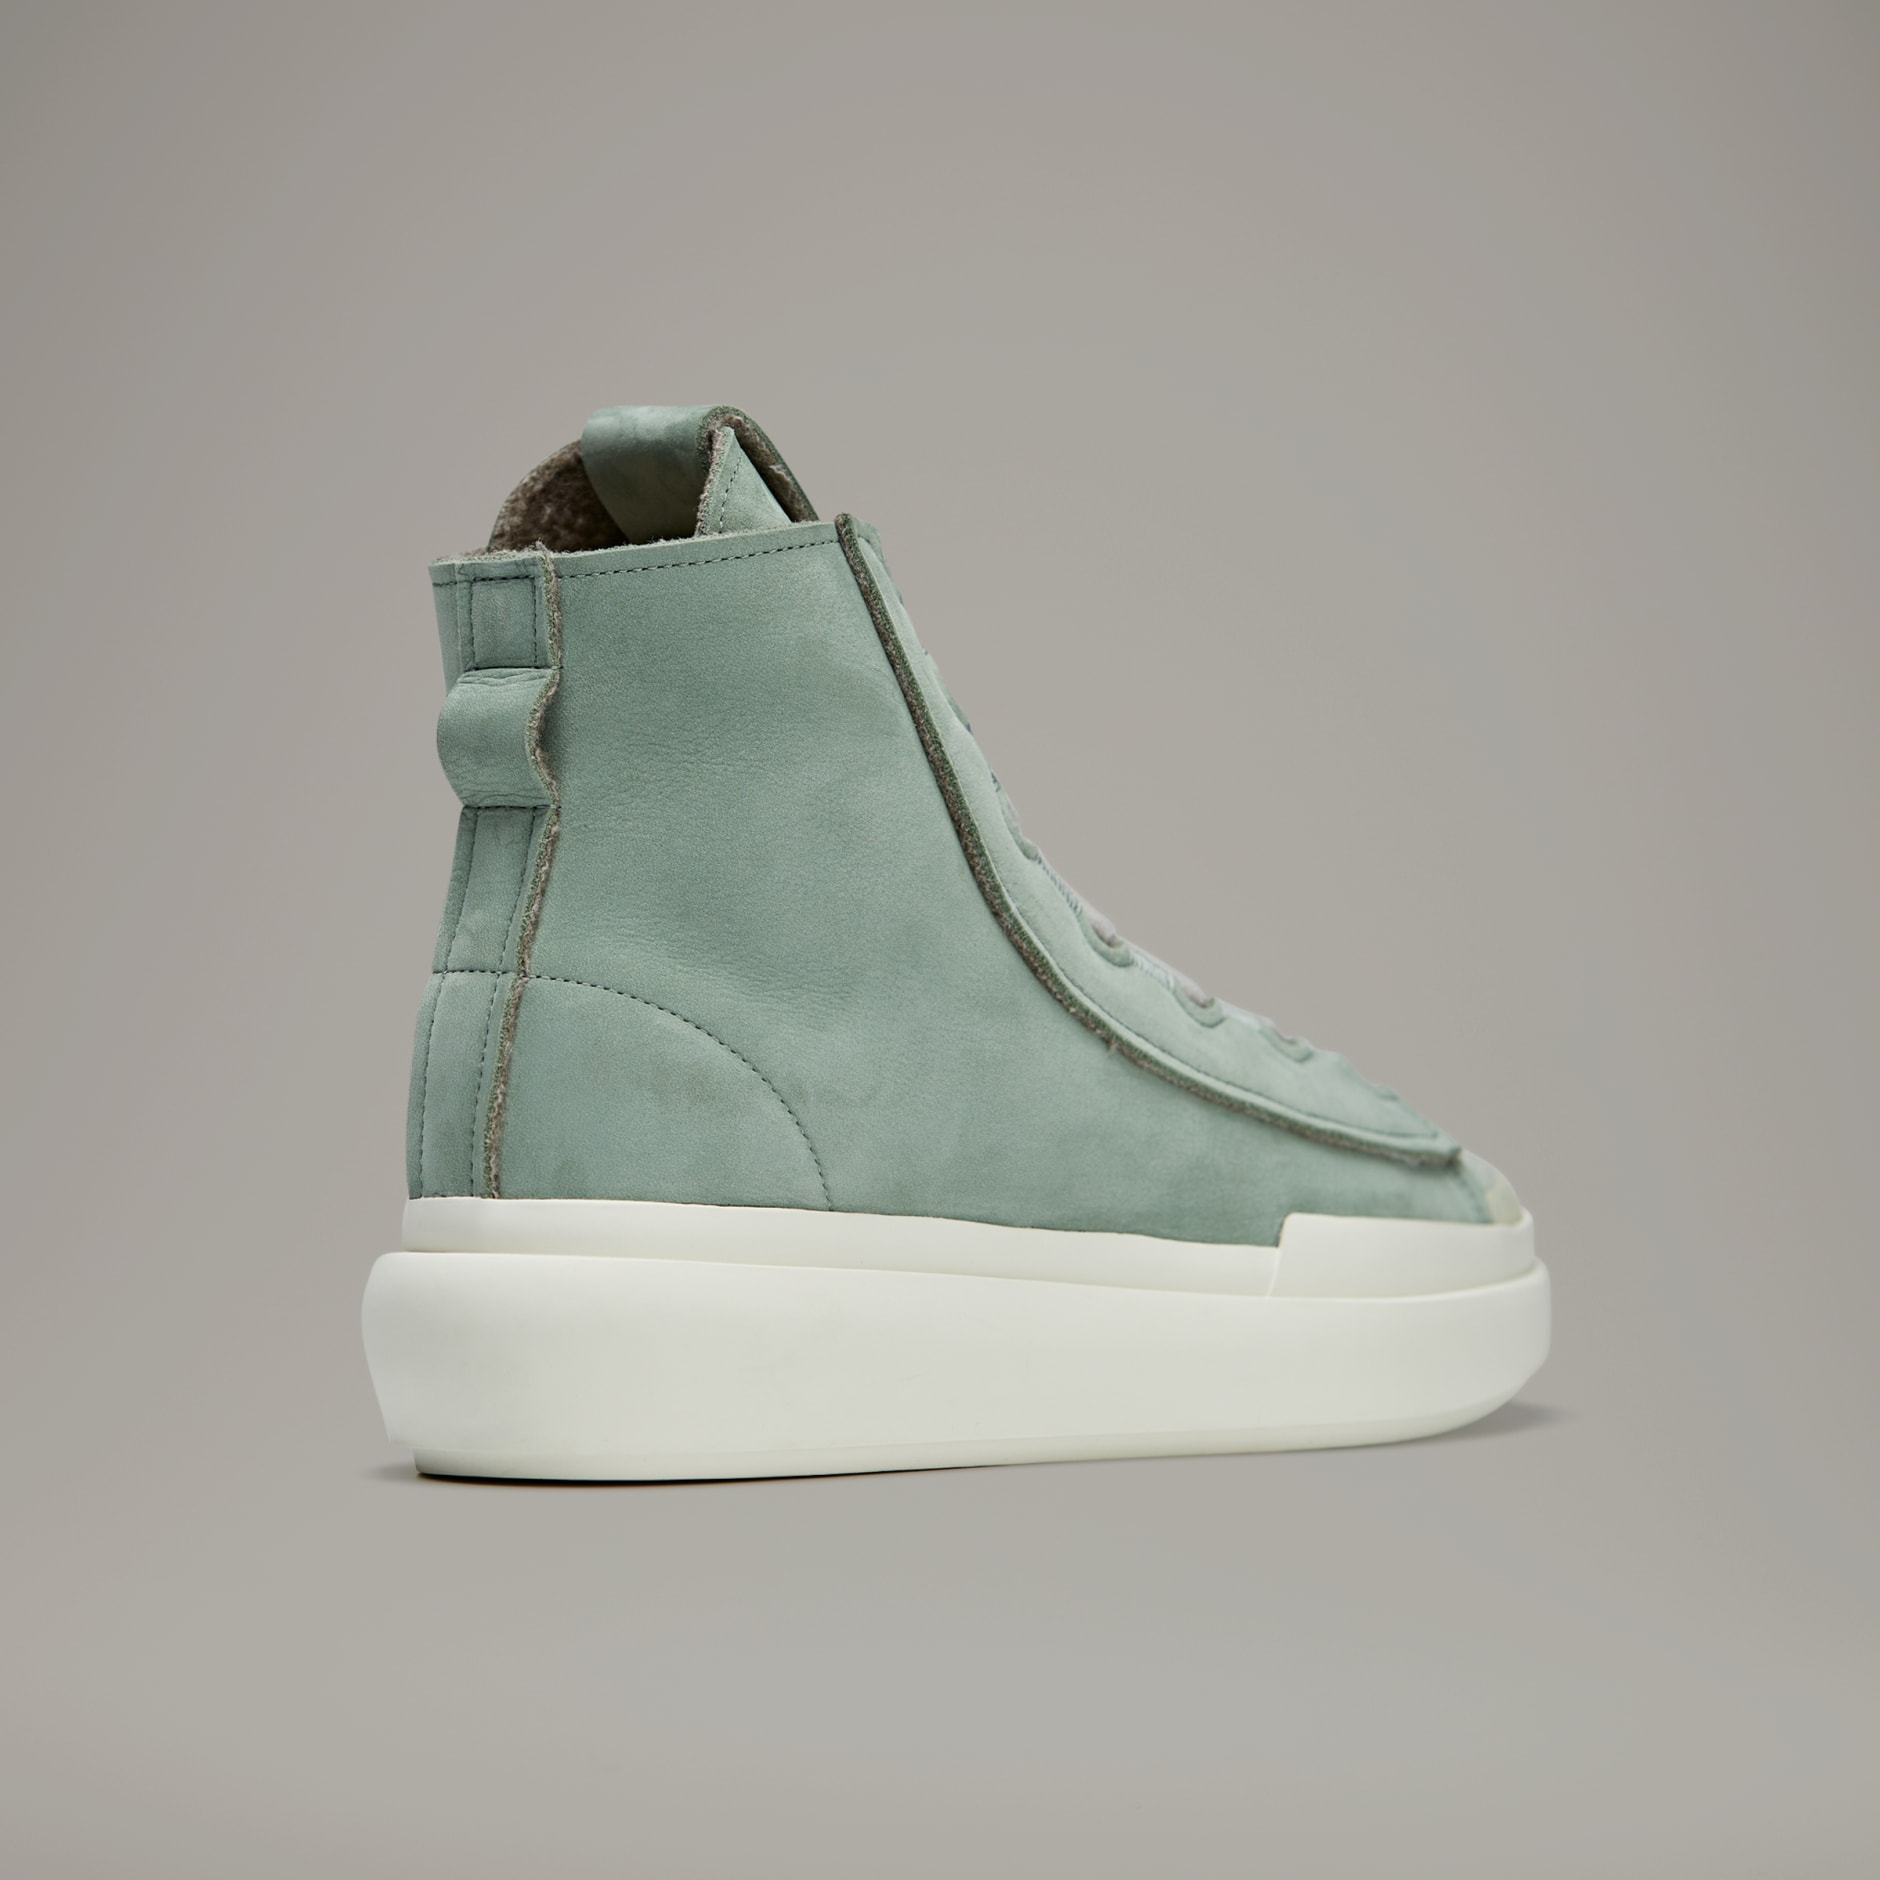 Shoes - Y-3 Nizza High - Green | adidas Oman